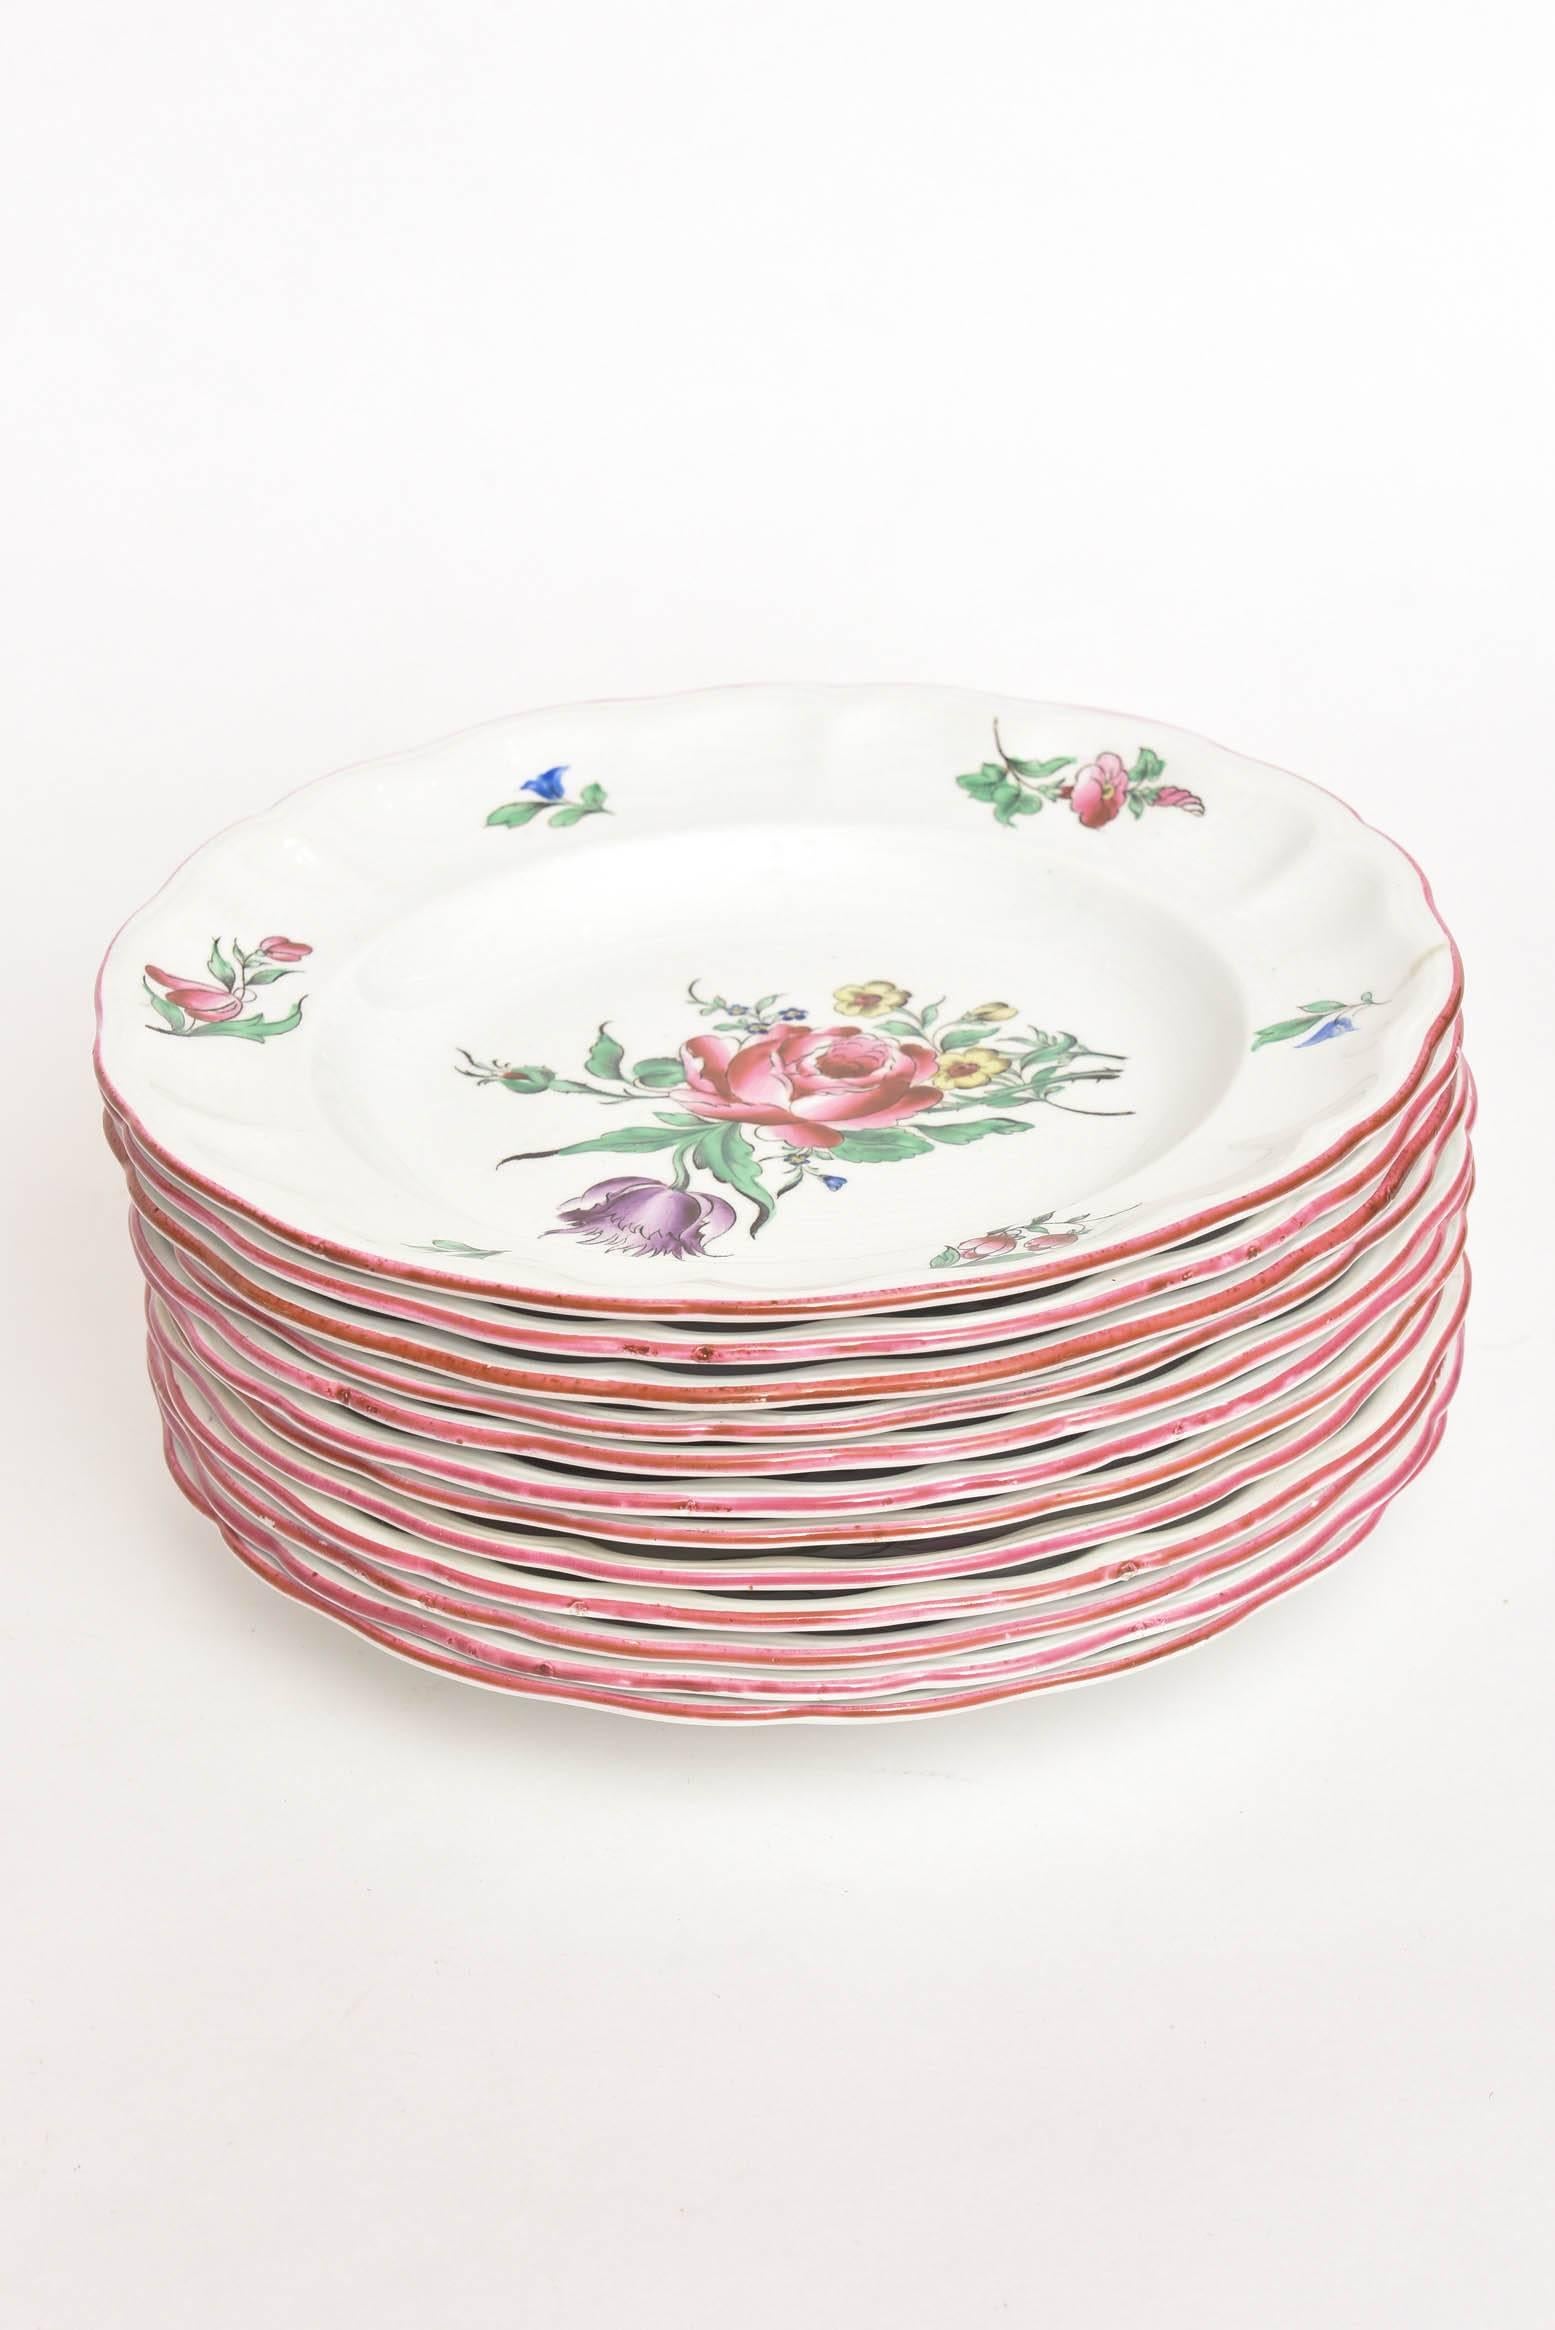 Enamel 12 Luneville, France Hand Painted, Rose Trim Dinner Plates, Vintage